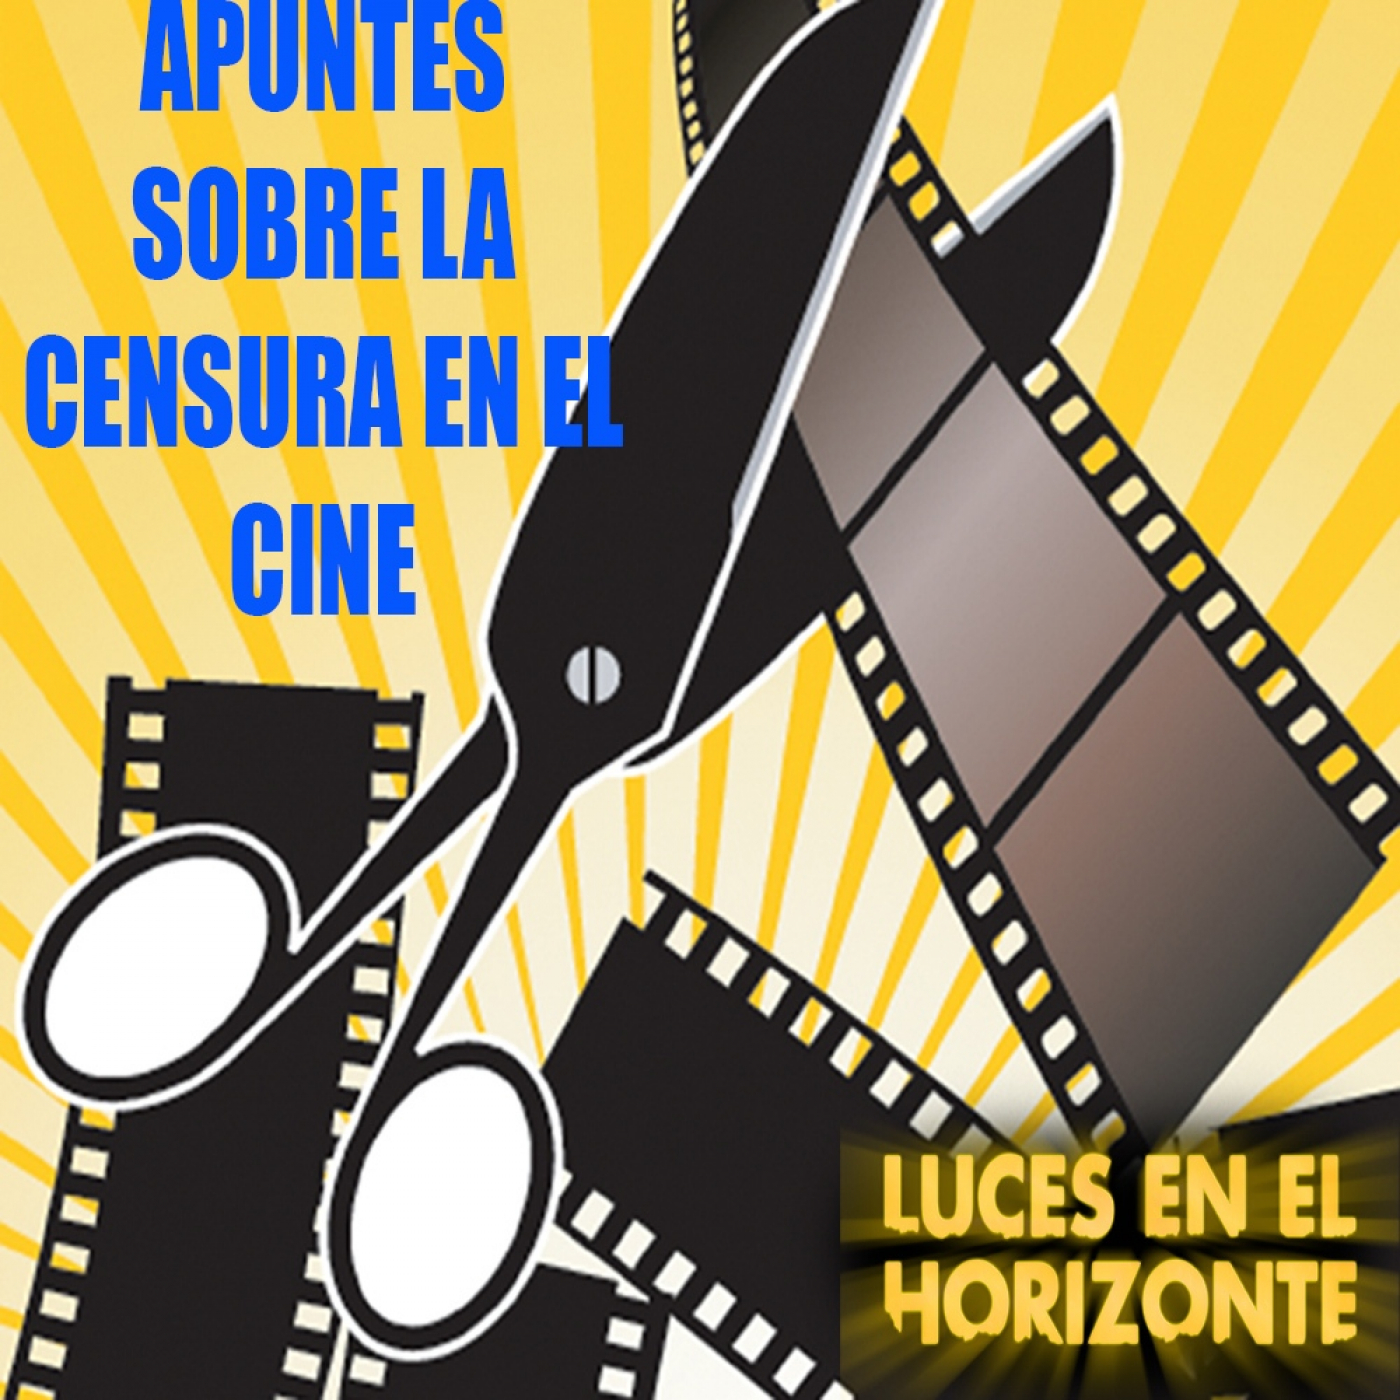 Algunos apuntes sobre censura en el cine - Luces en el Horizonte - Episodio exclusivo para mecenas